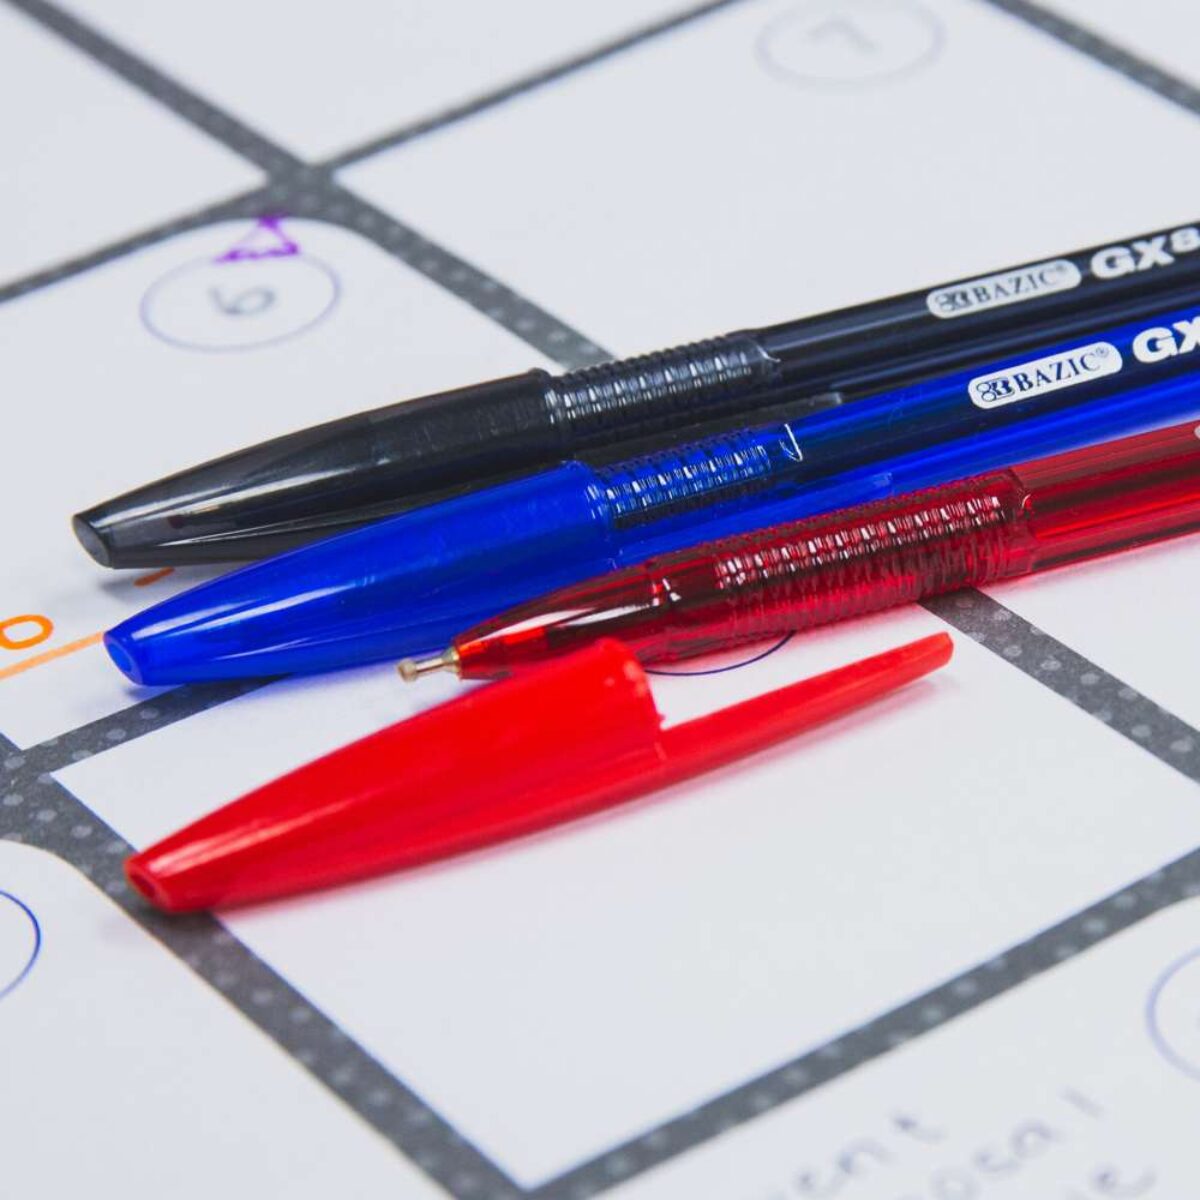 10 Pure Neon Color Stick Pen - The CEO Creative